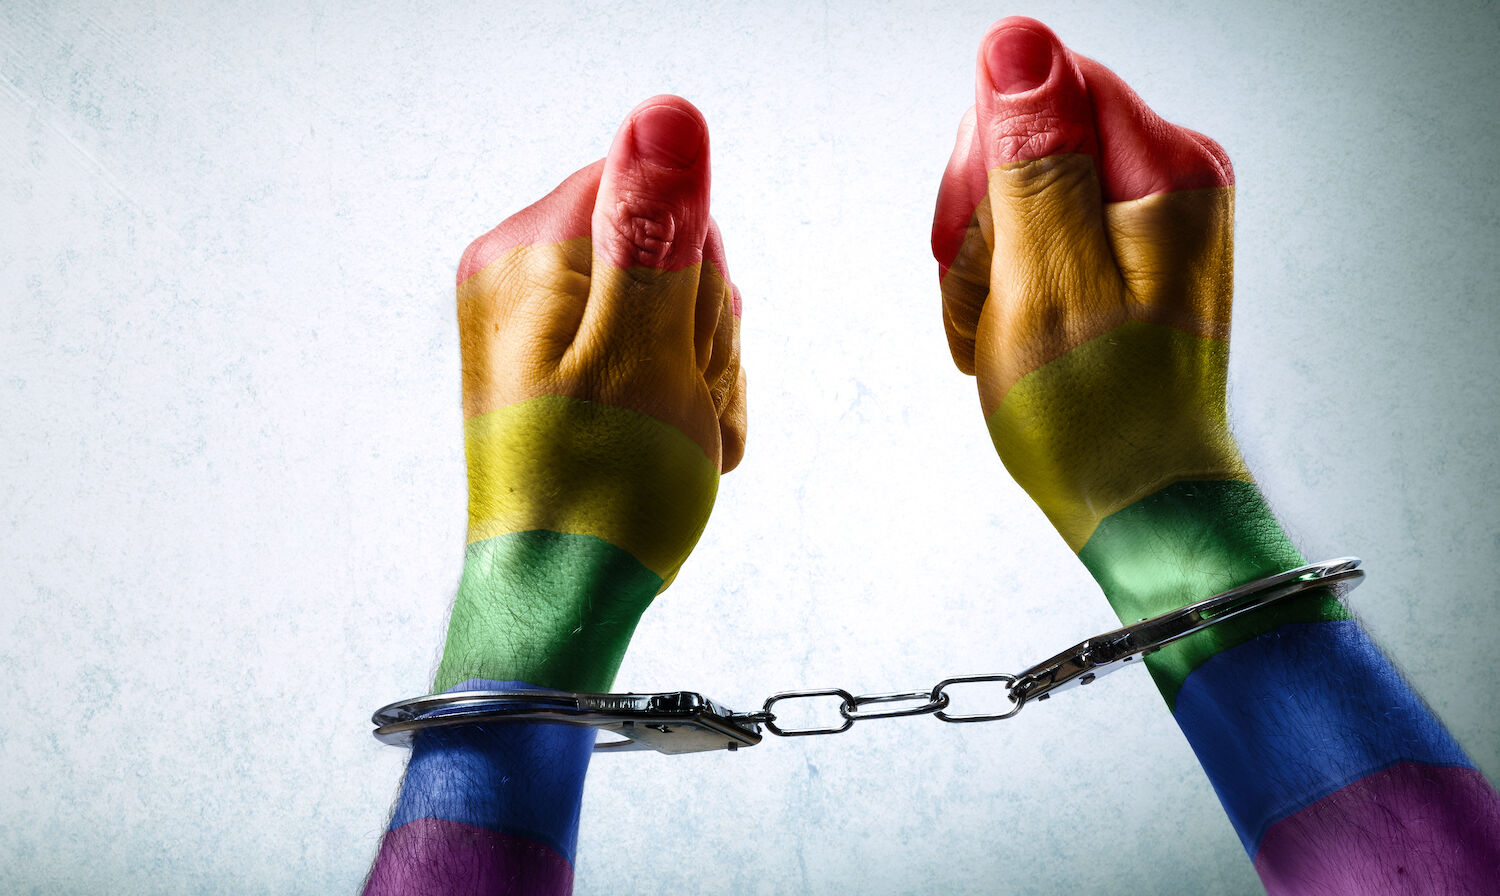 Rainbow hands in handcuffs